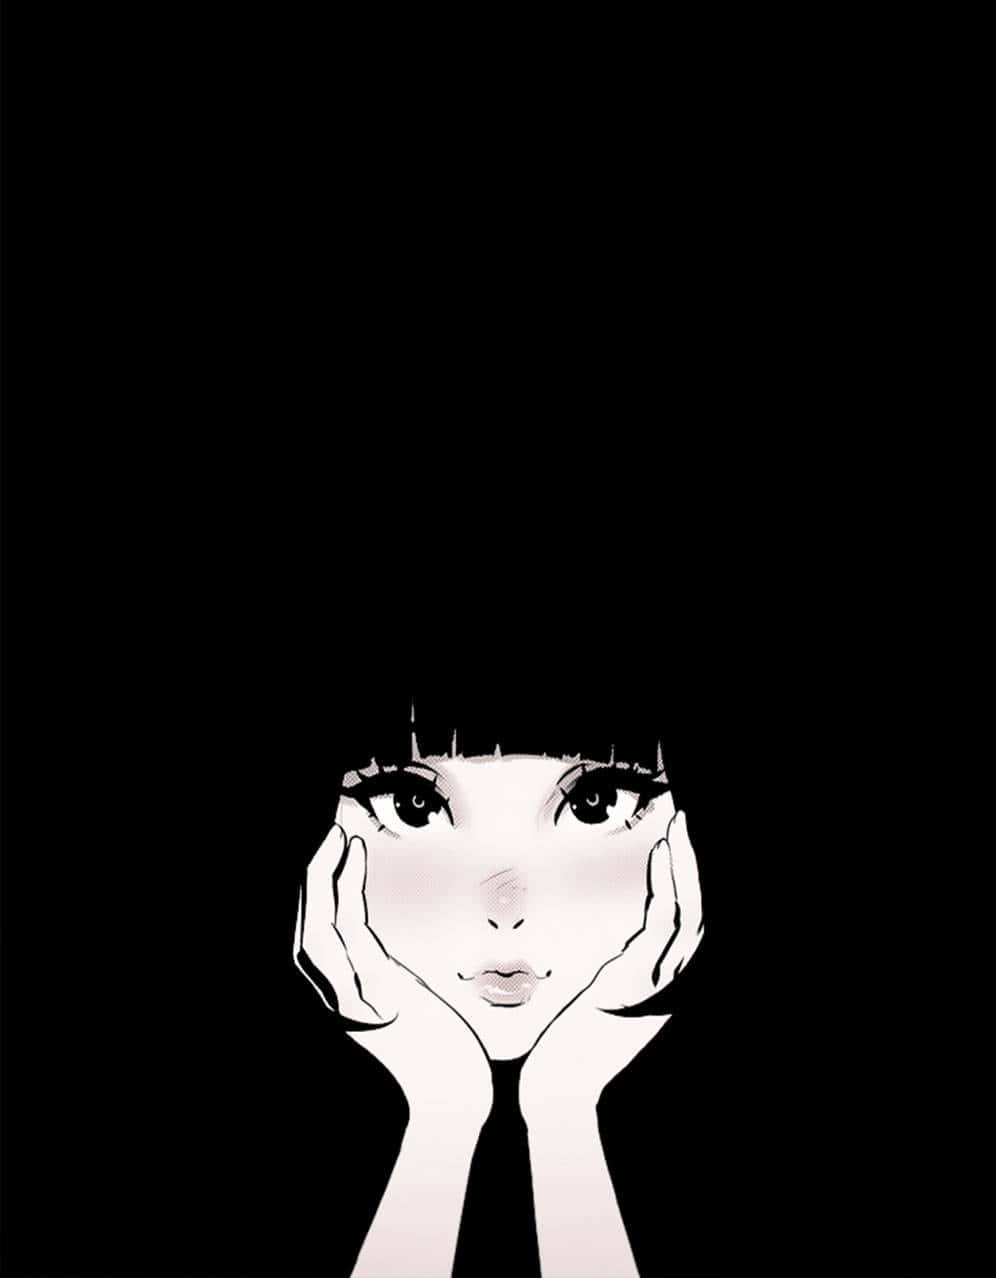 Blackand White Anime Girl Illustration Wallpaper